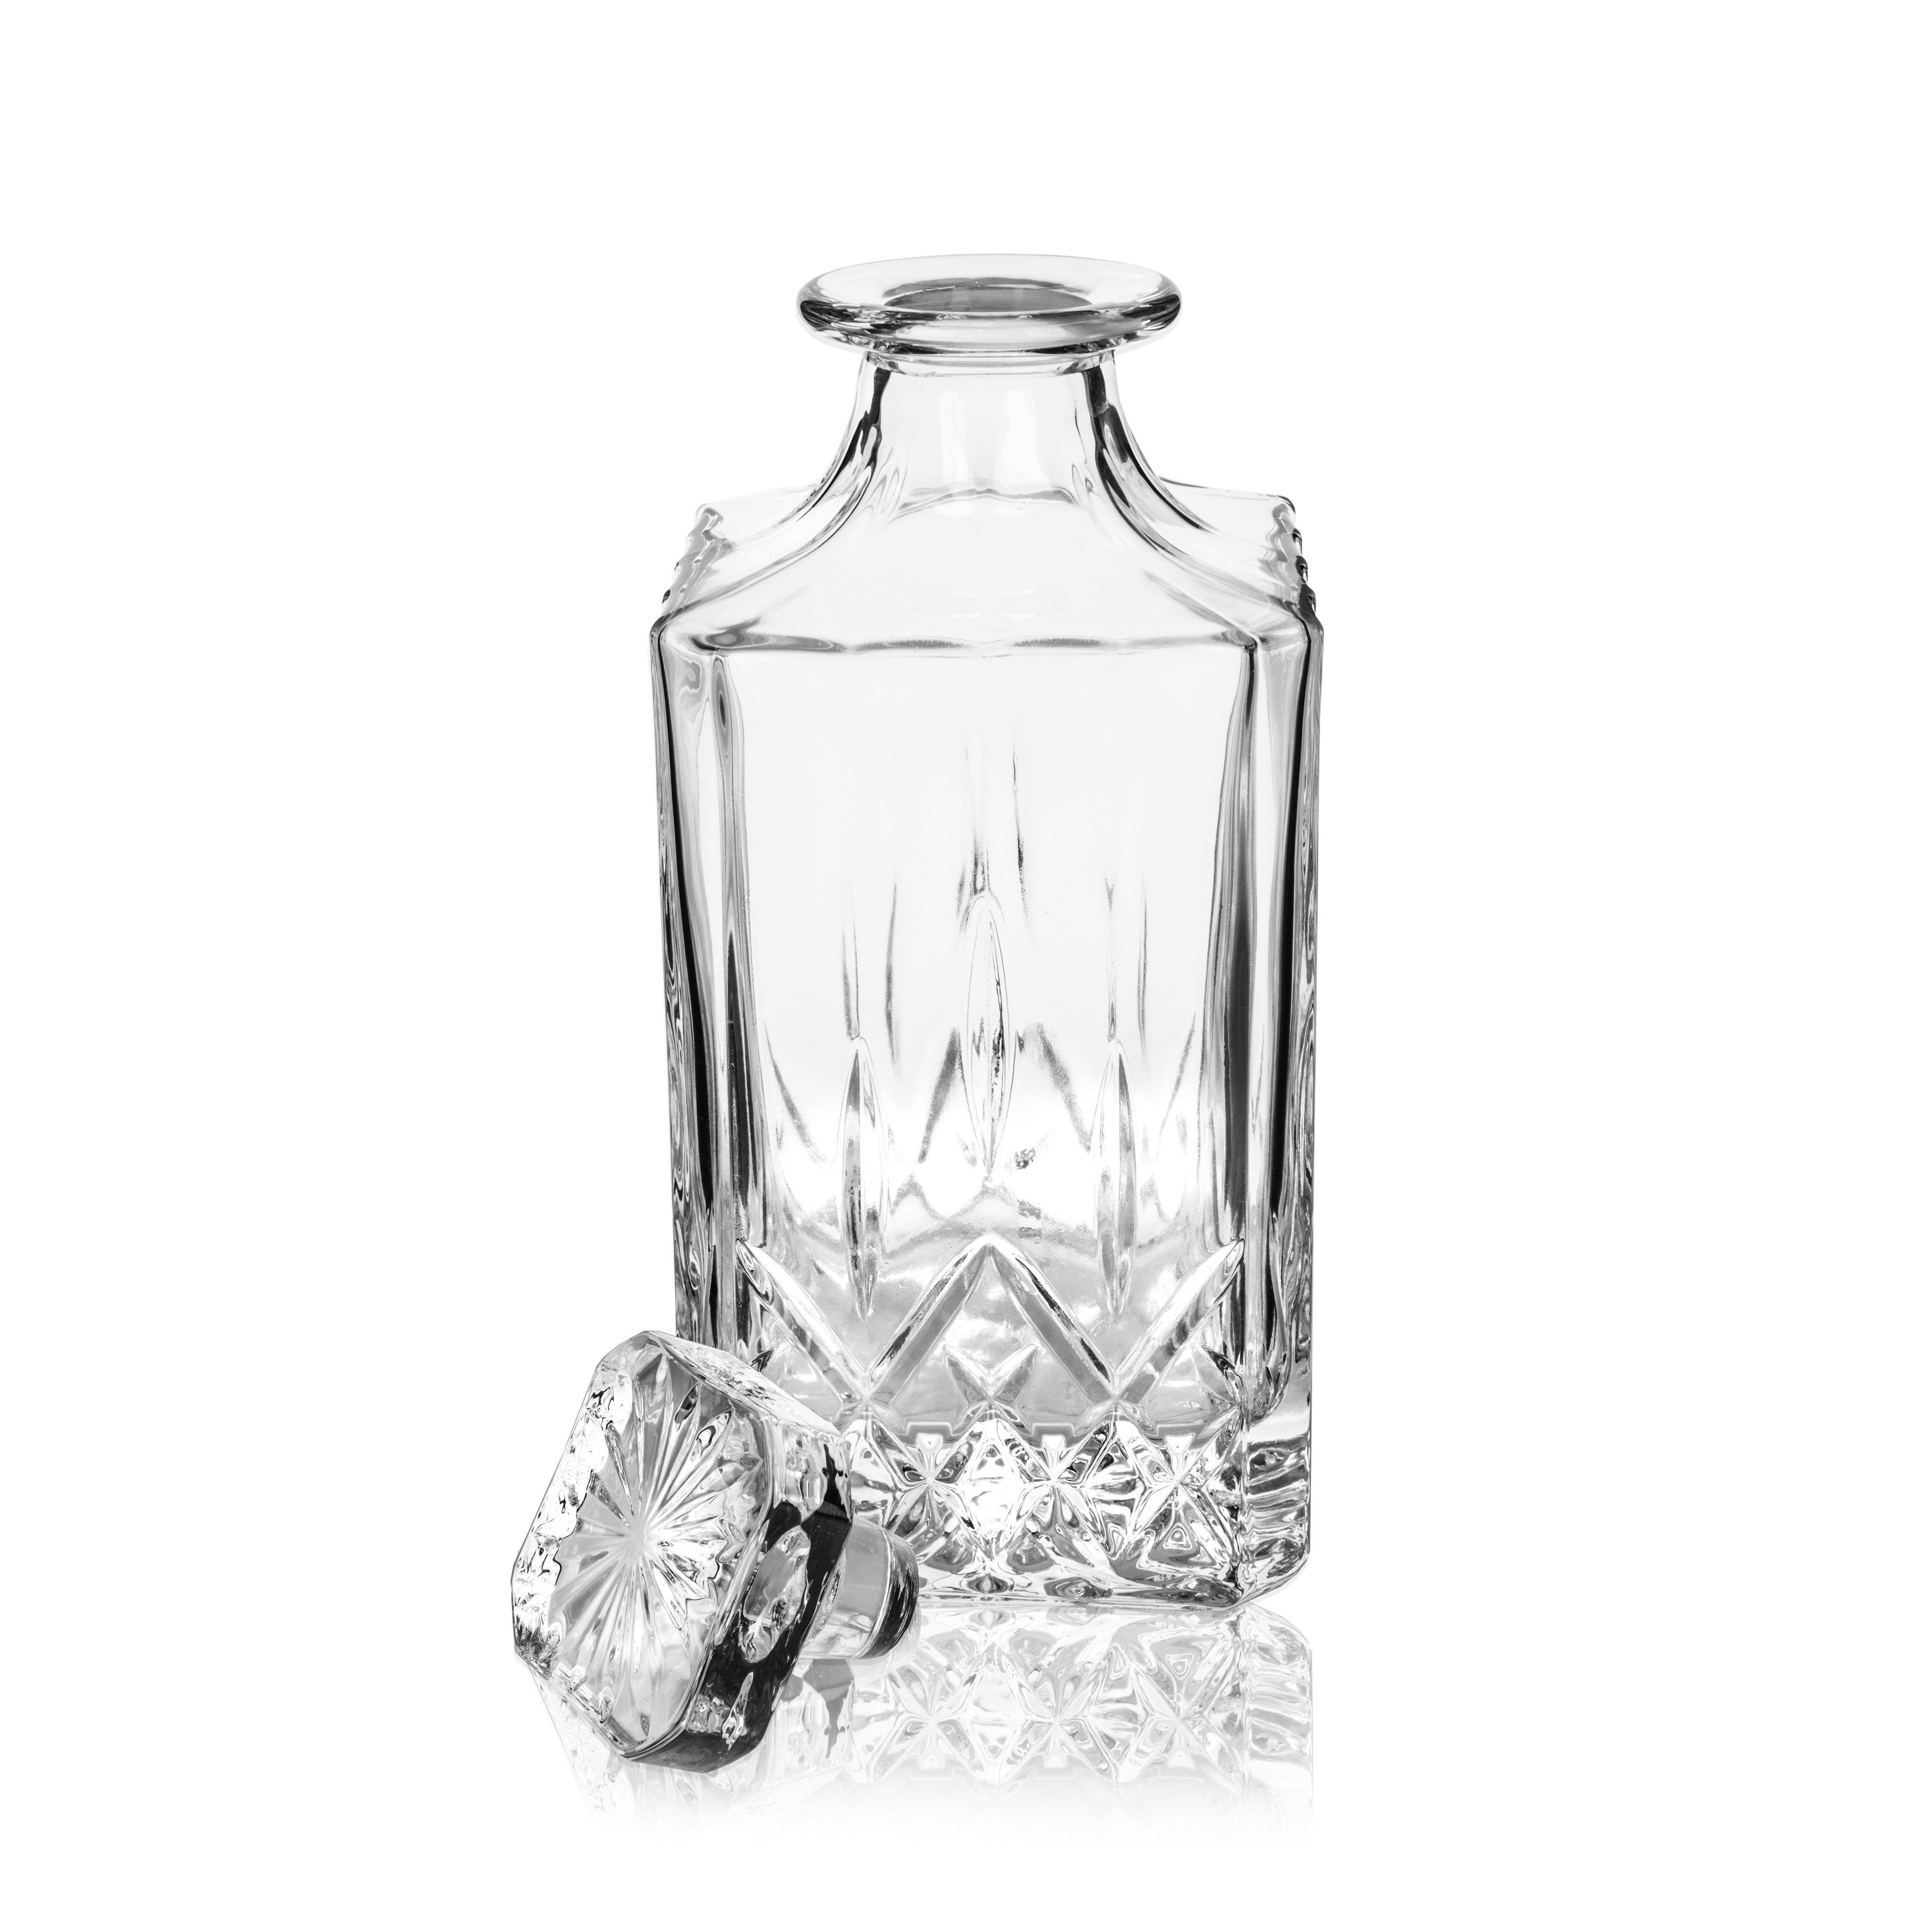 Viski Admiral 30 oz Liquor Decanter - Crystal Glass Liquor Dispenser for  Whisky, Bourbon, Tequila, Brandy - Gift for Liquor Lovers